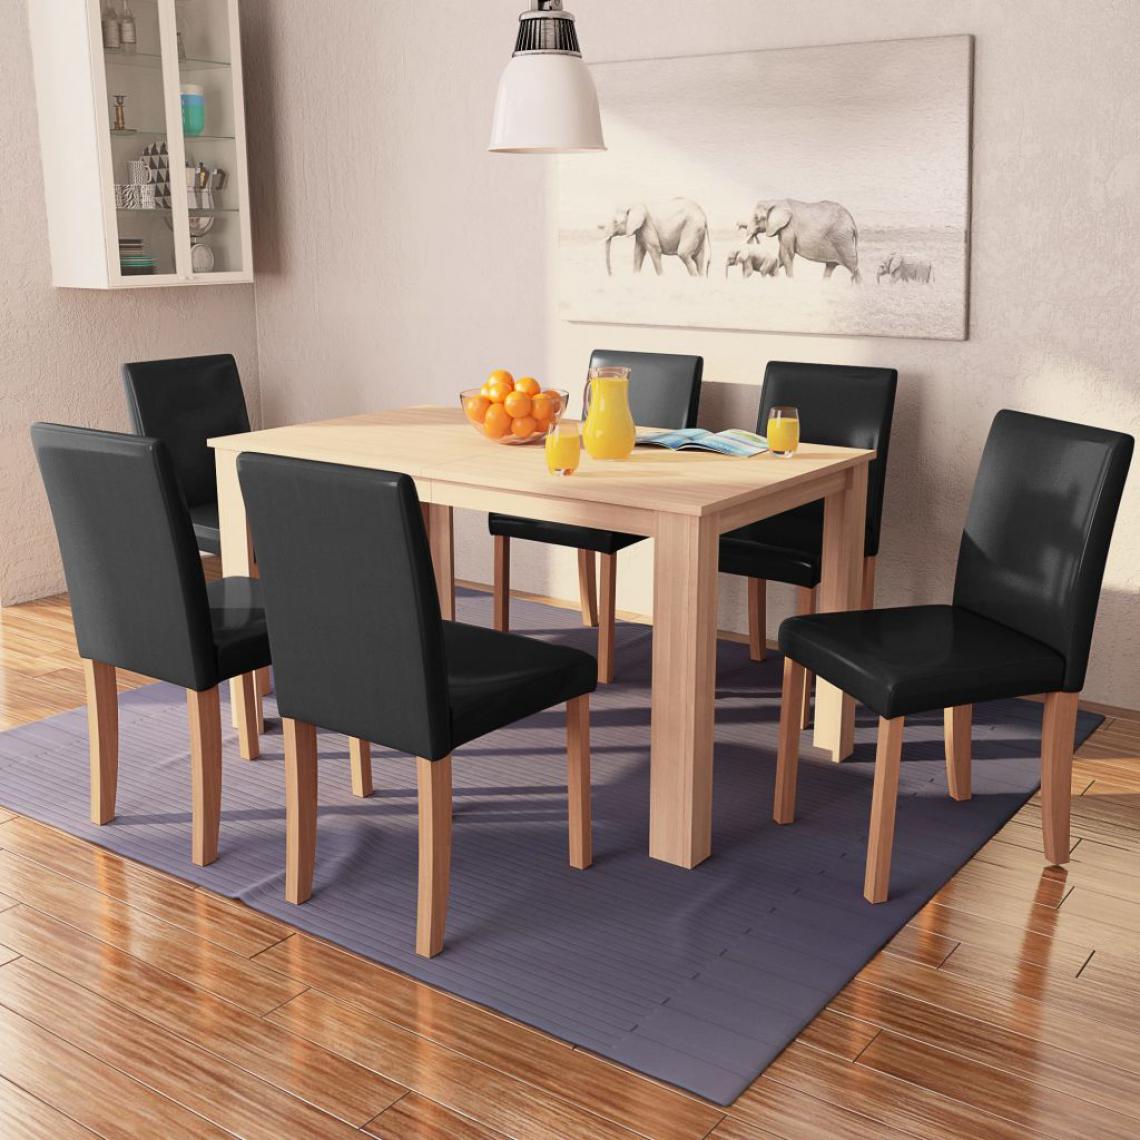 Chunhelife - Table et chaises 7 pcs Cuir synthétique Chêne Noir - Tables à manger